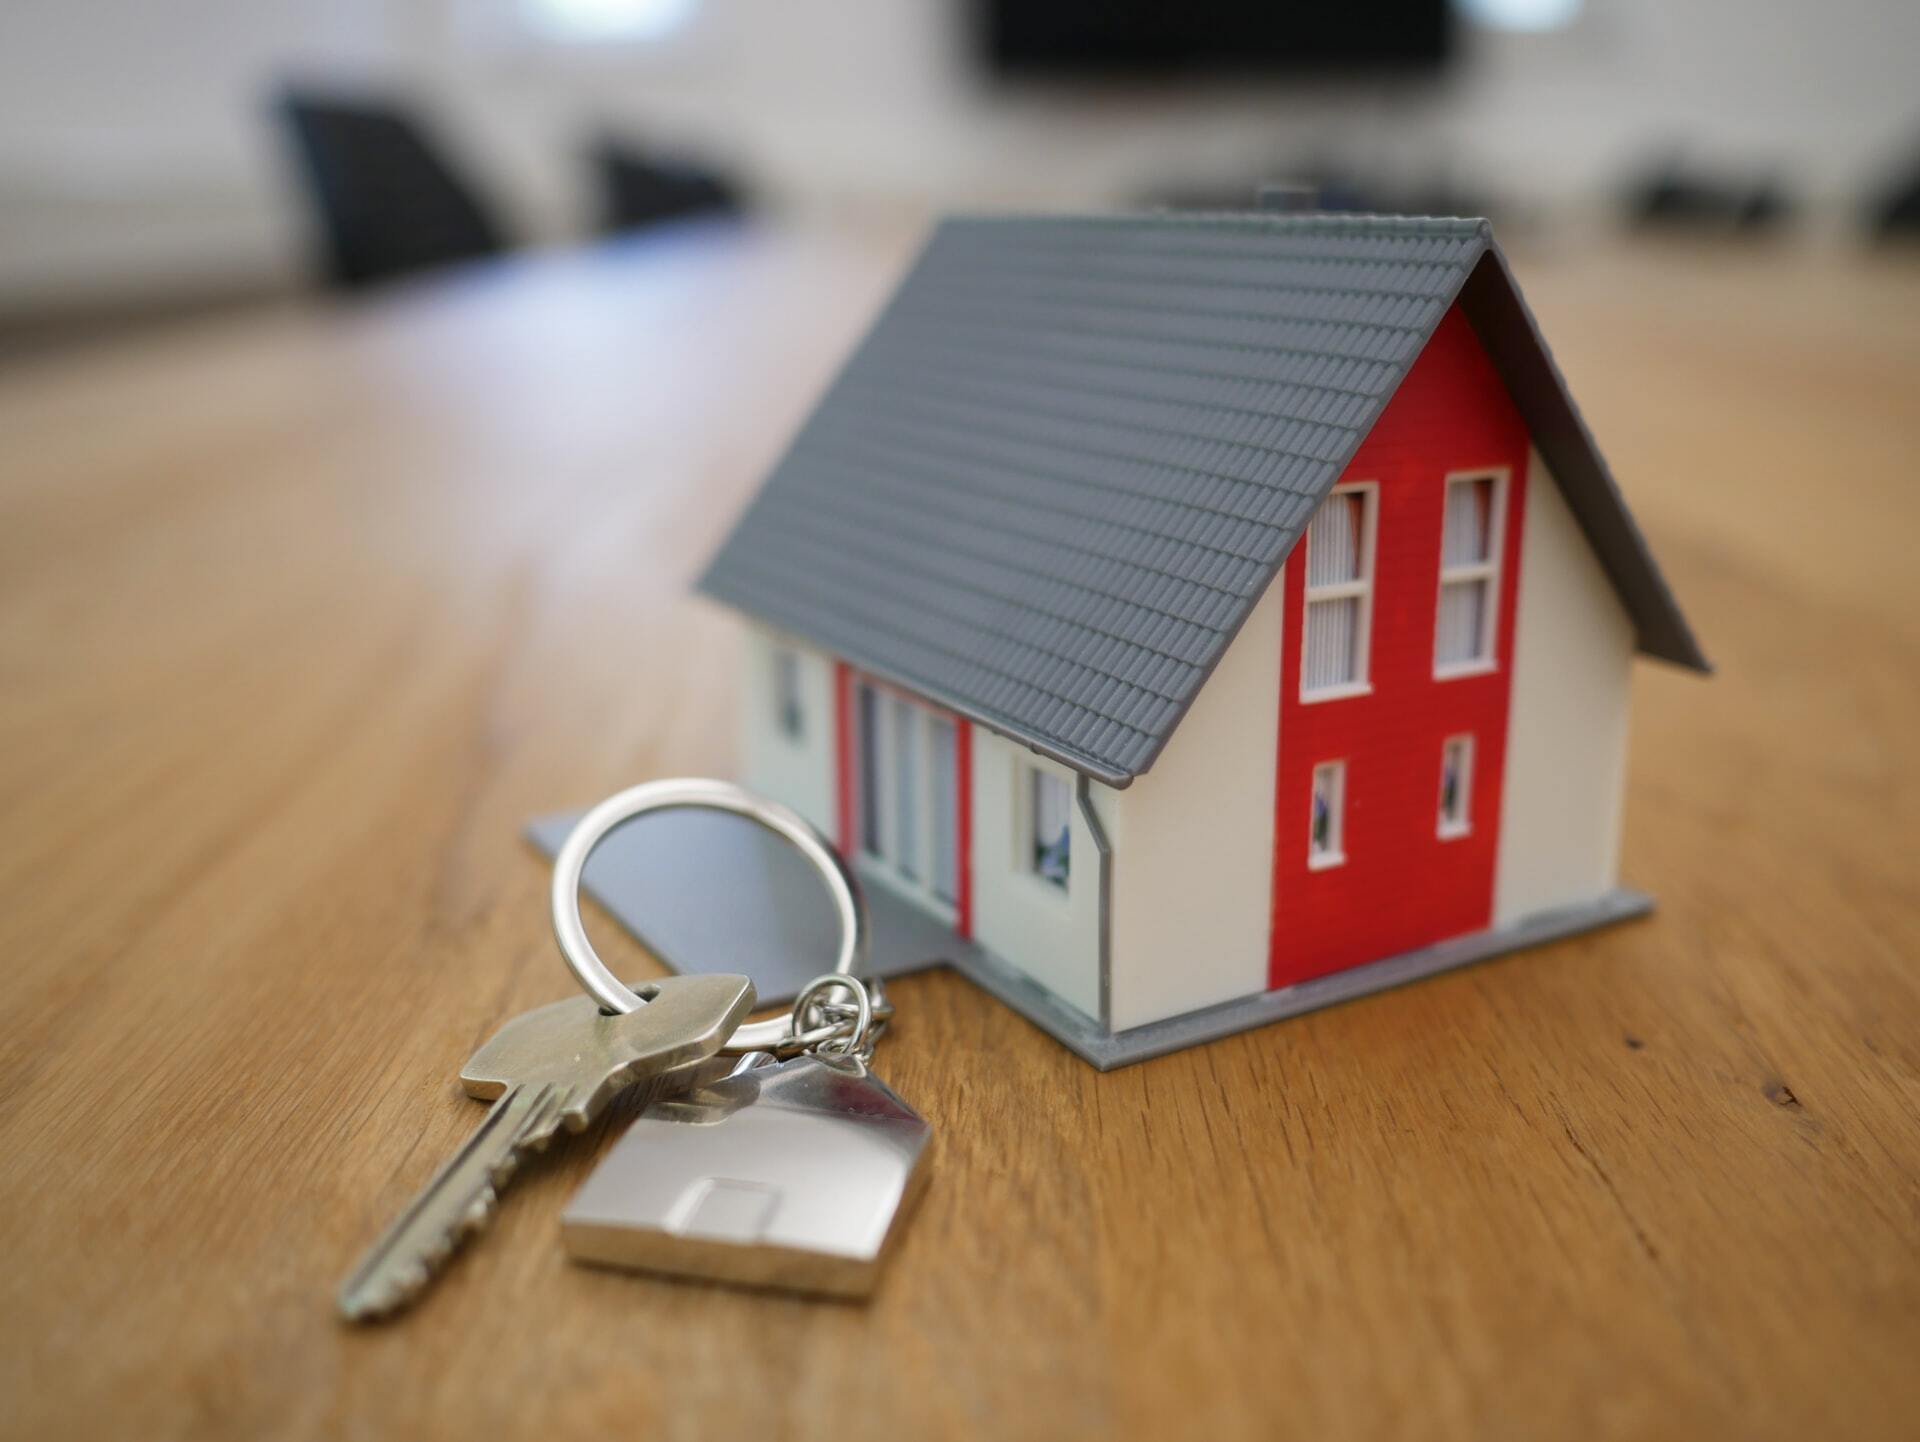 A miniature house keychain.